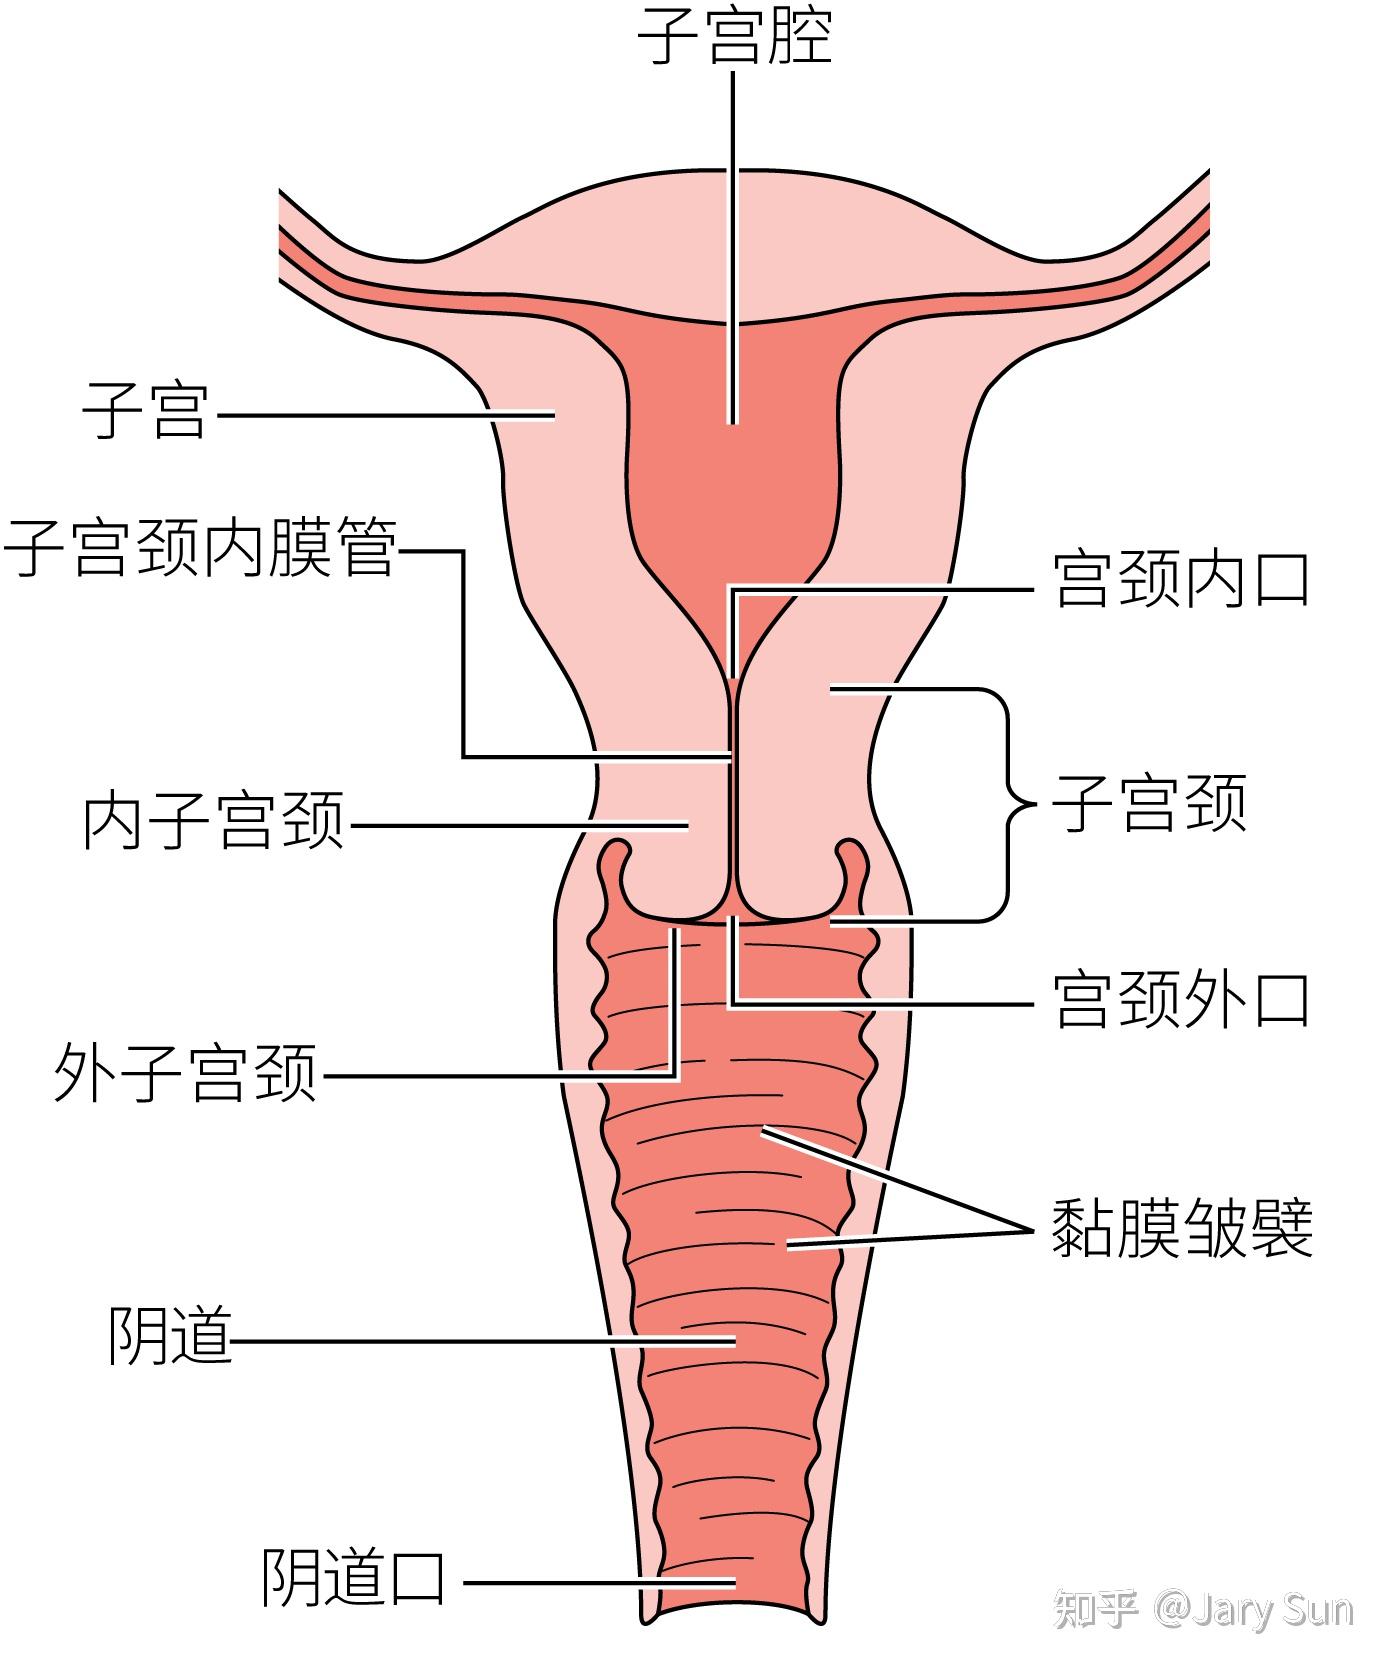 女性生殖器官包括卵巢,输卵管,子宫,阴道(图1)和外阴